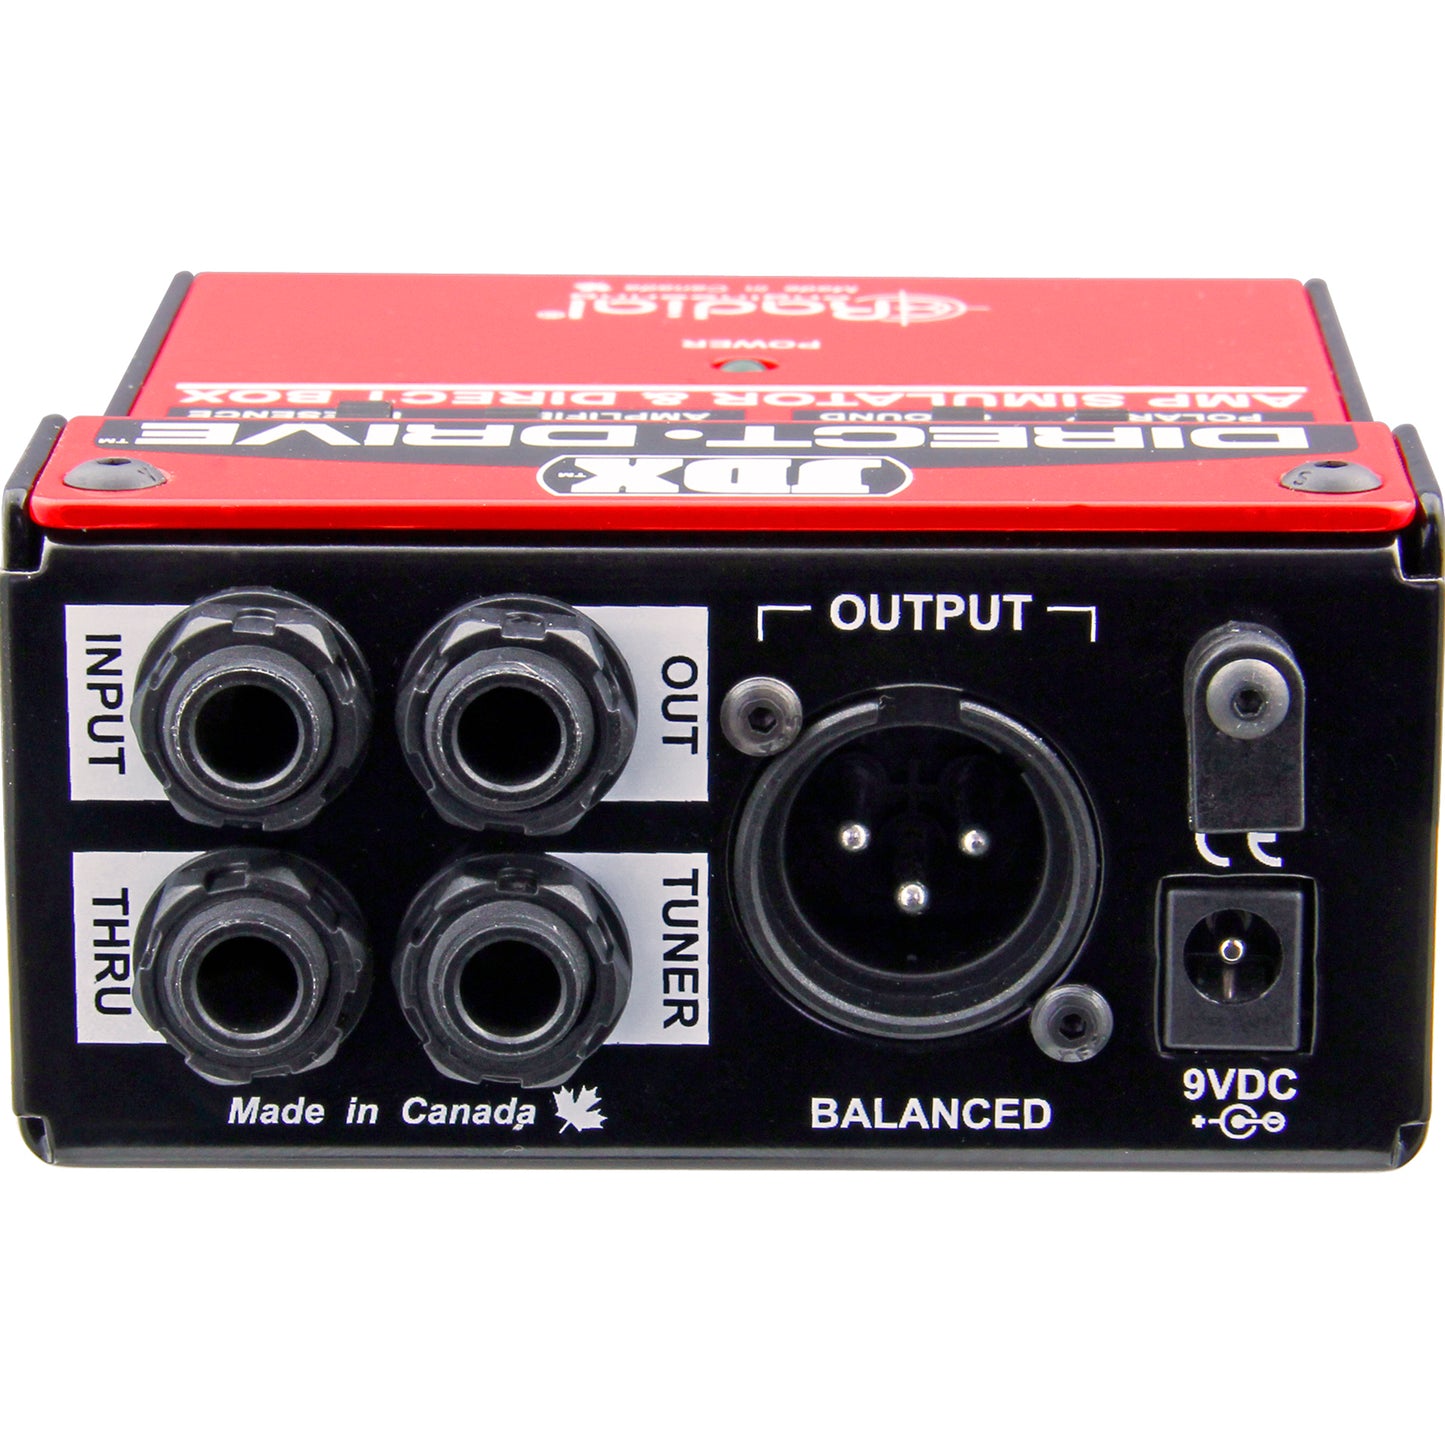 Radial JDX Direct-Drive Amp Simulator and DI Box